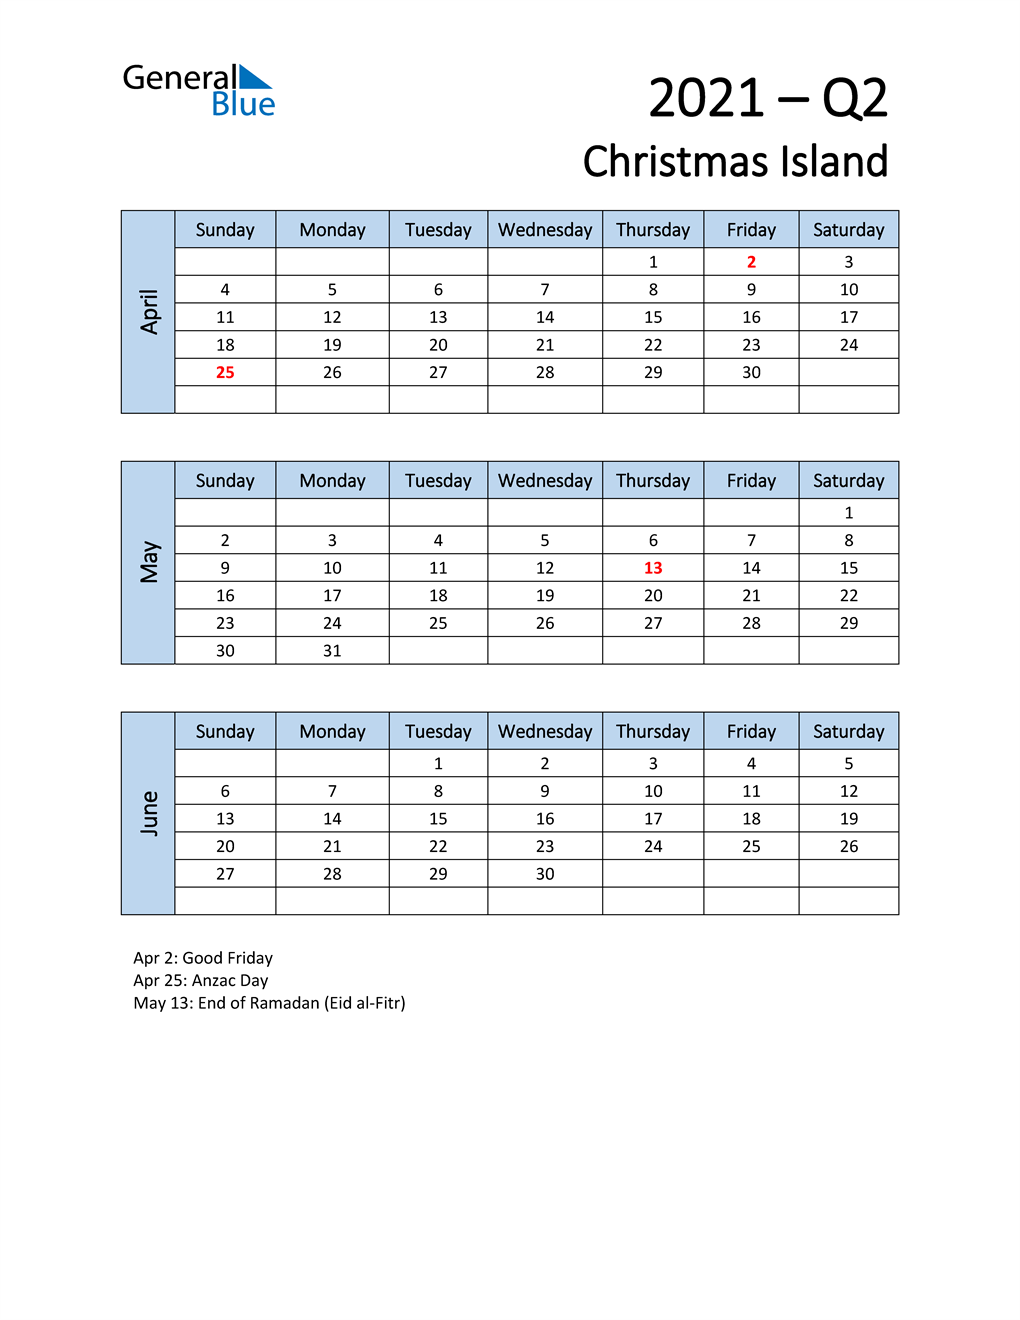  Free Q2 2021 Calendar for Christmas Island